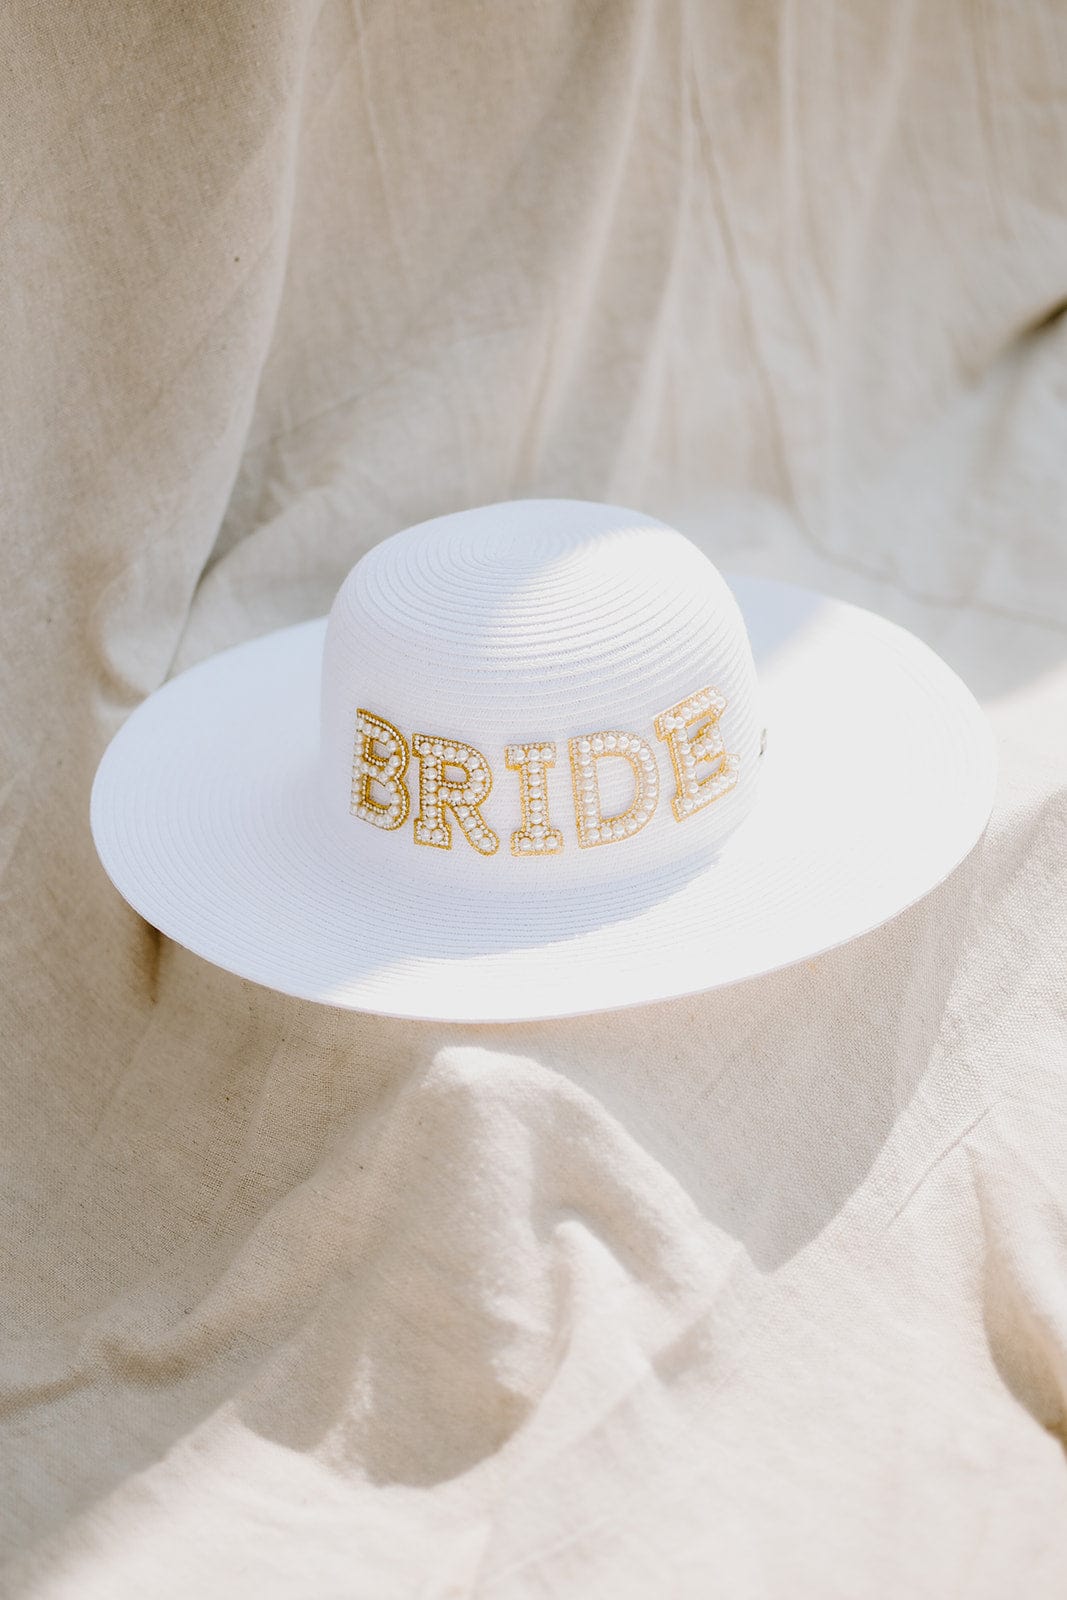 White & Gold Bride Beach Hat